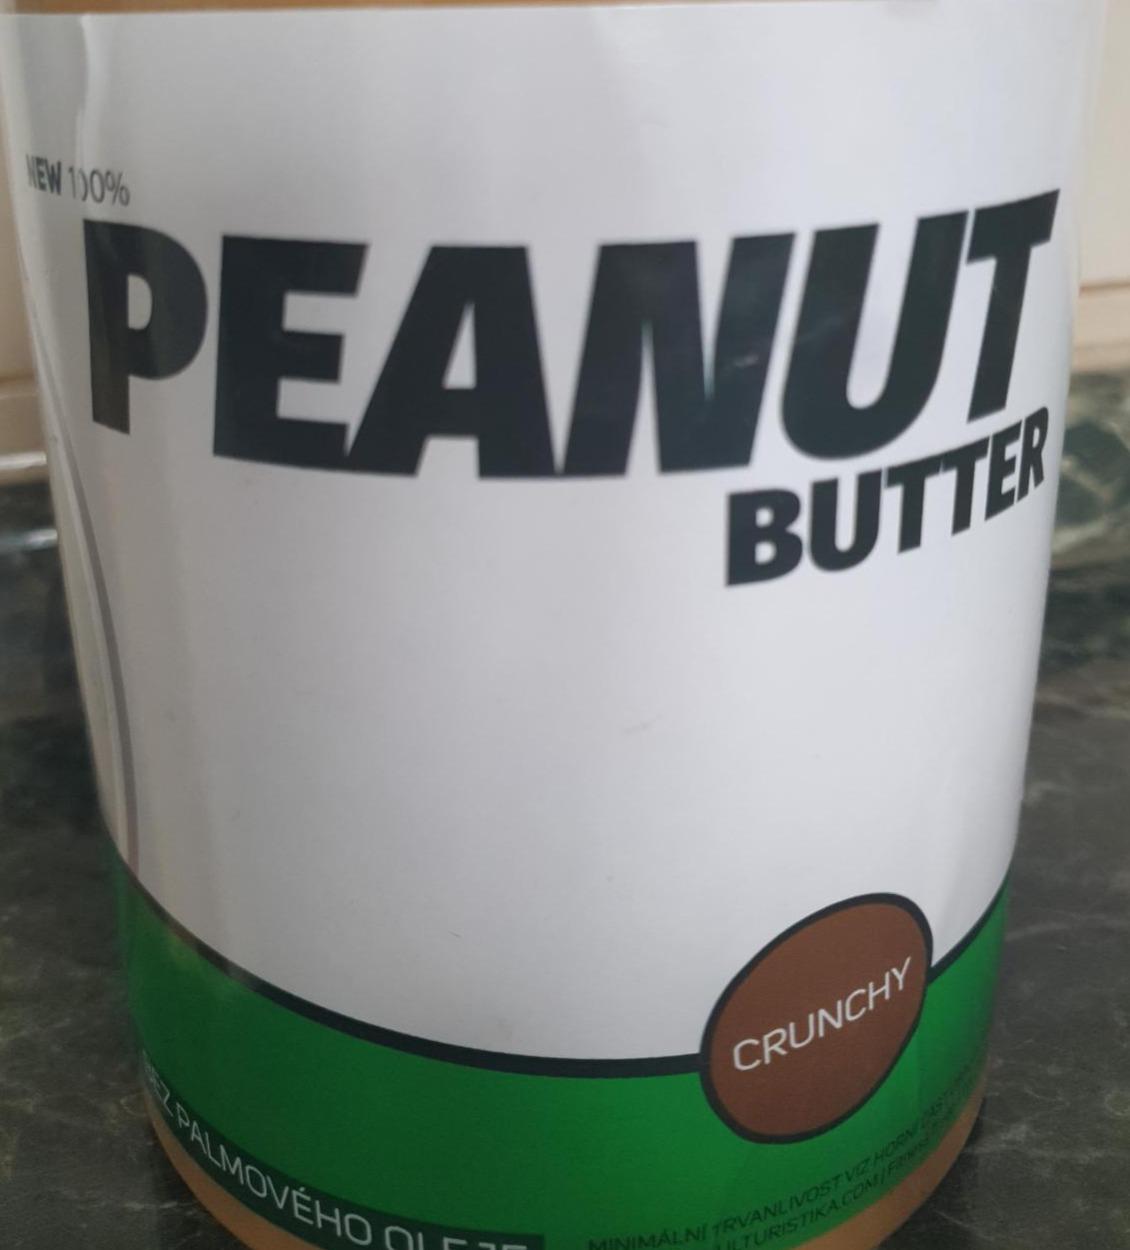 Fotografie - Peanut Butter Crunchy